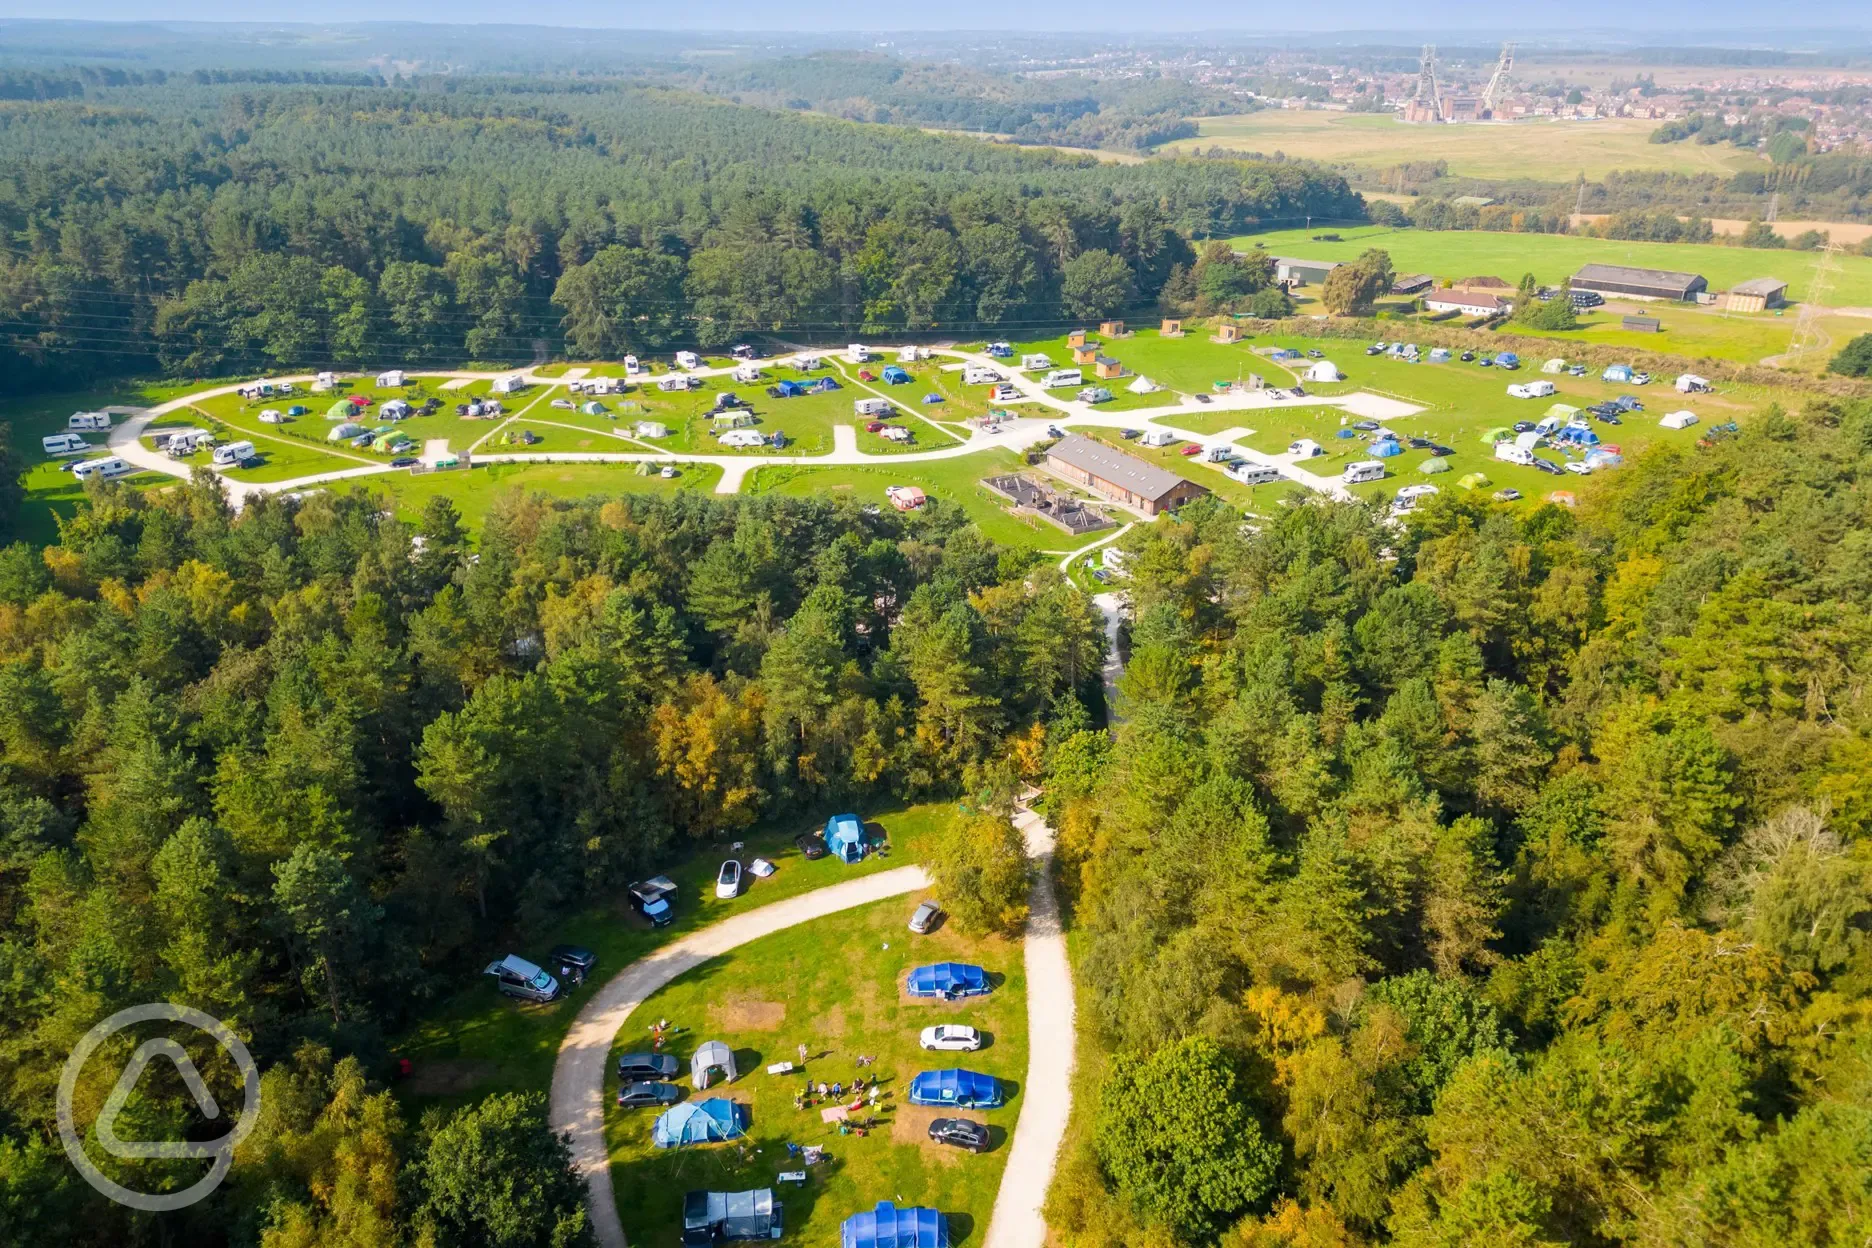 Aerial of the campsite